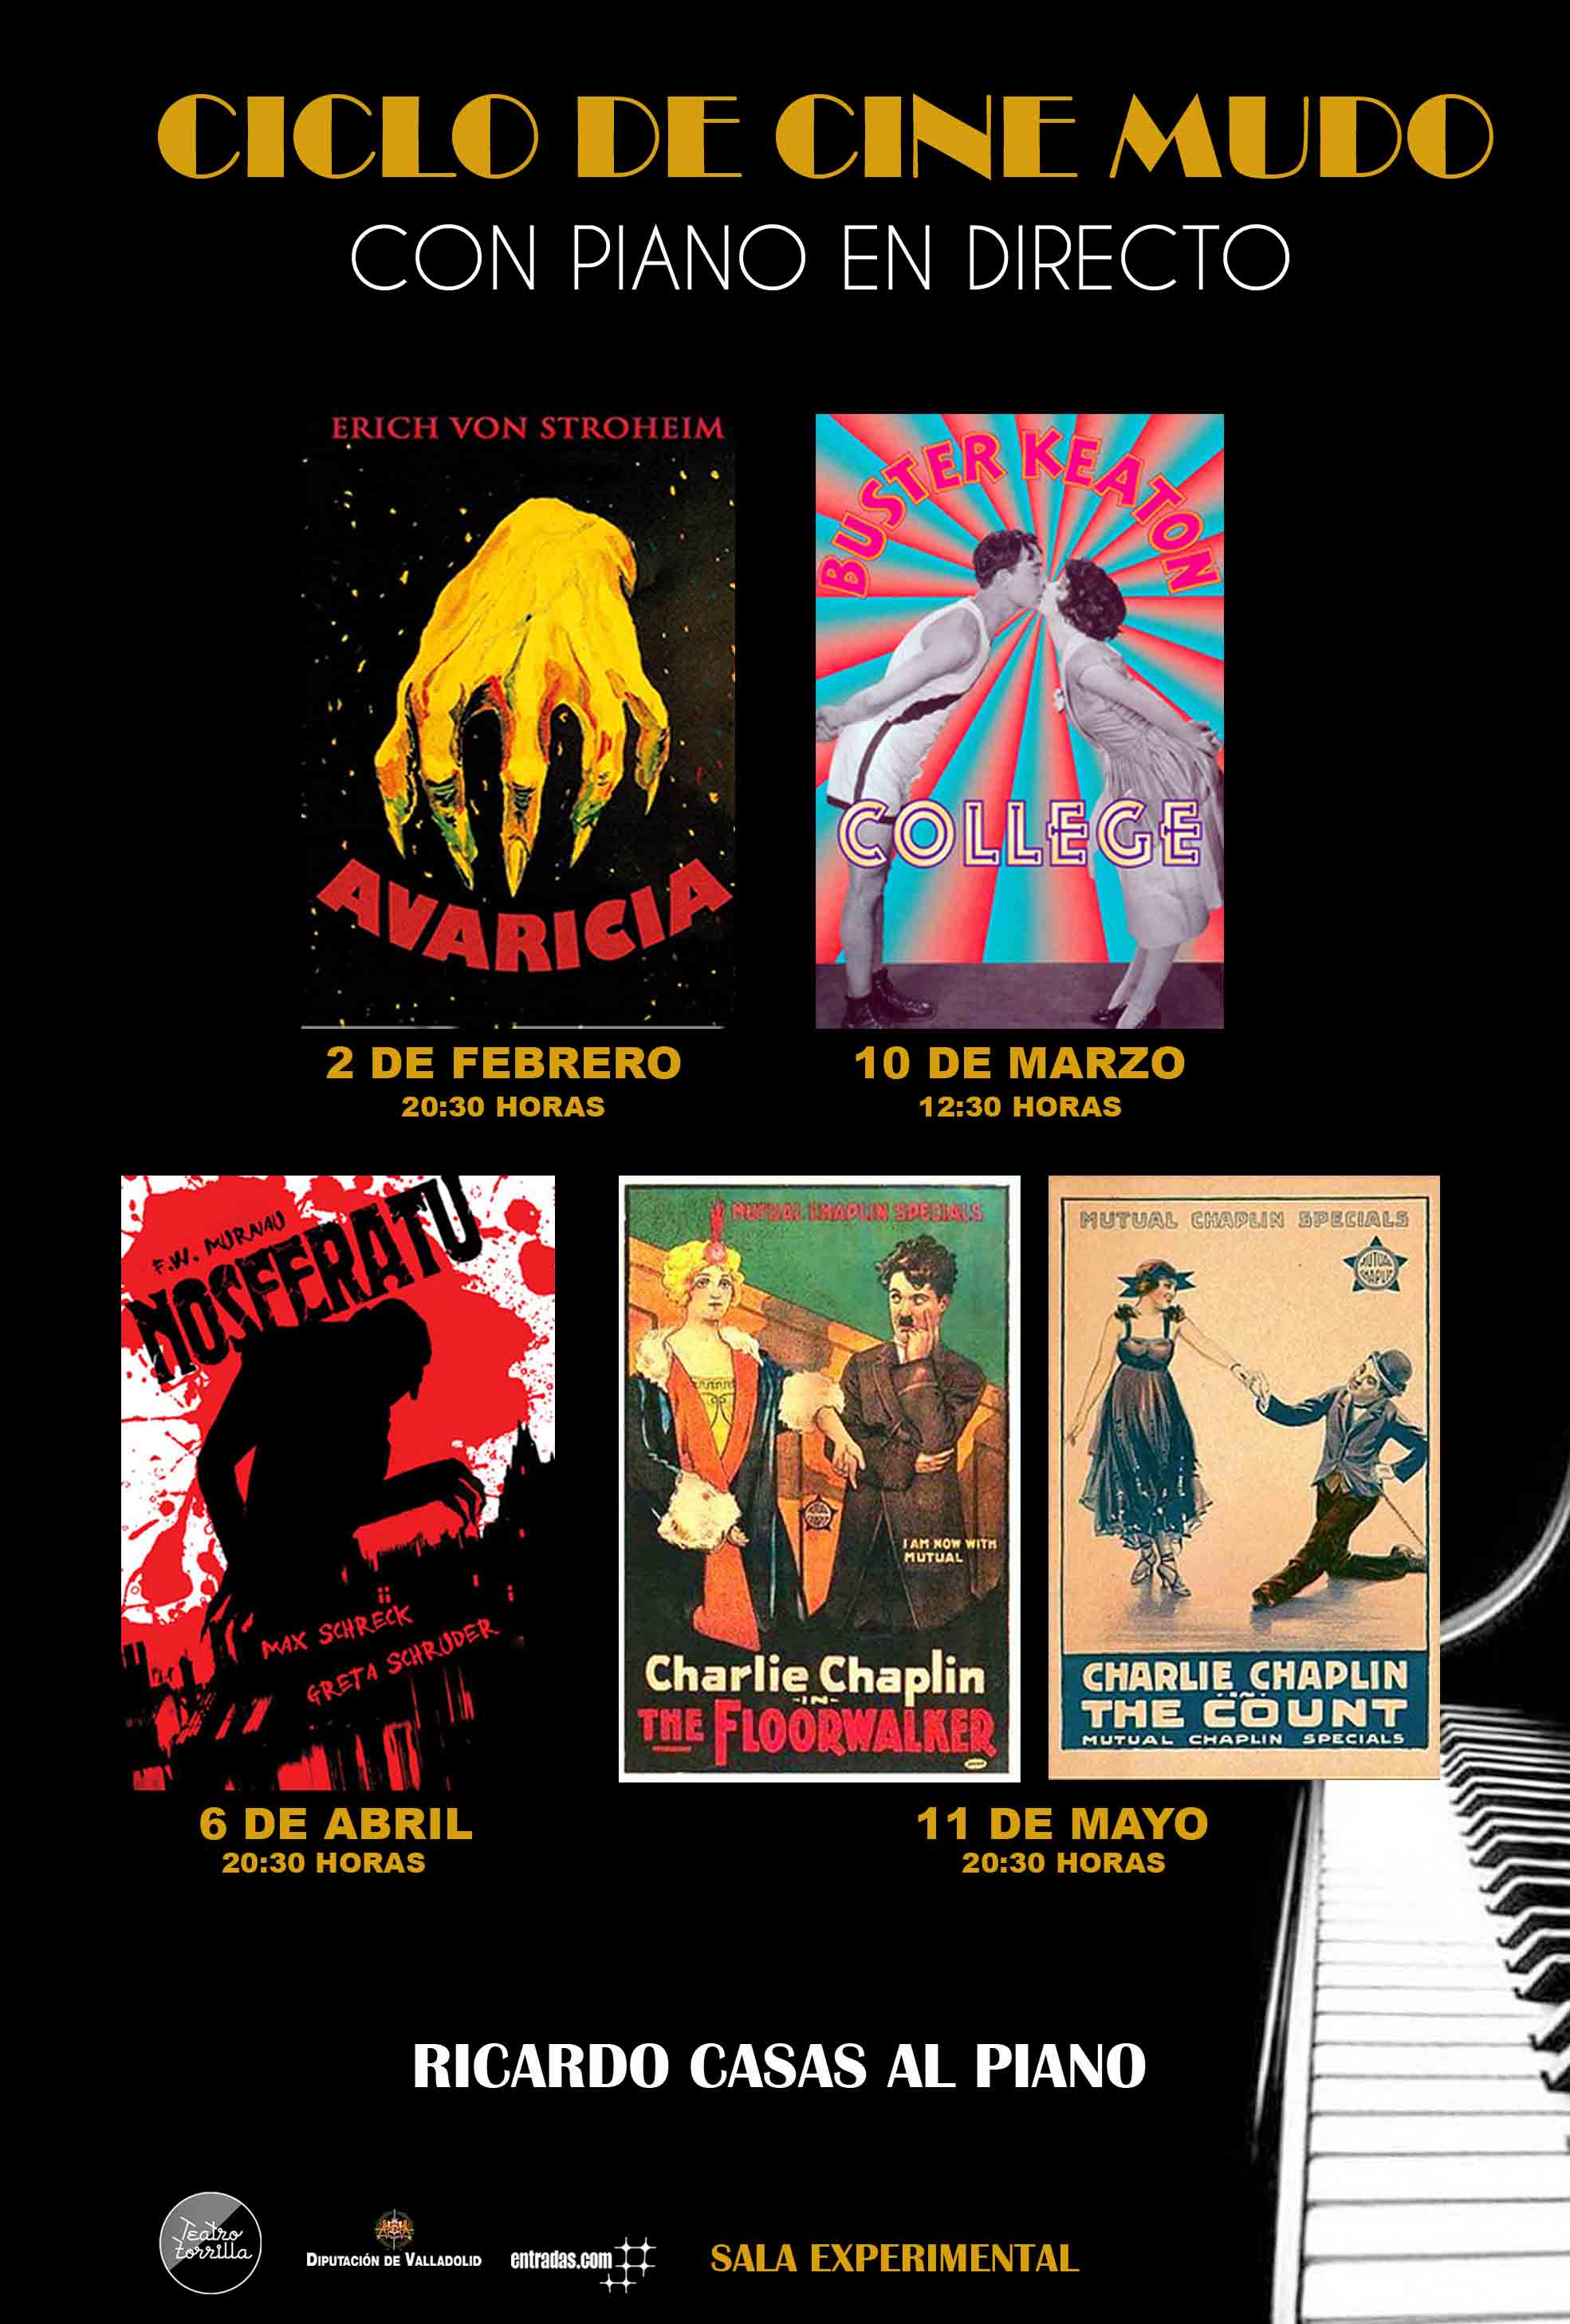 6 de Abril: Ciclo de cine mudo: Nosferatu / Sala Experimental